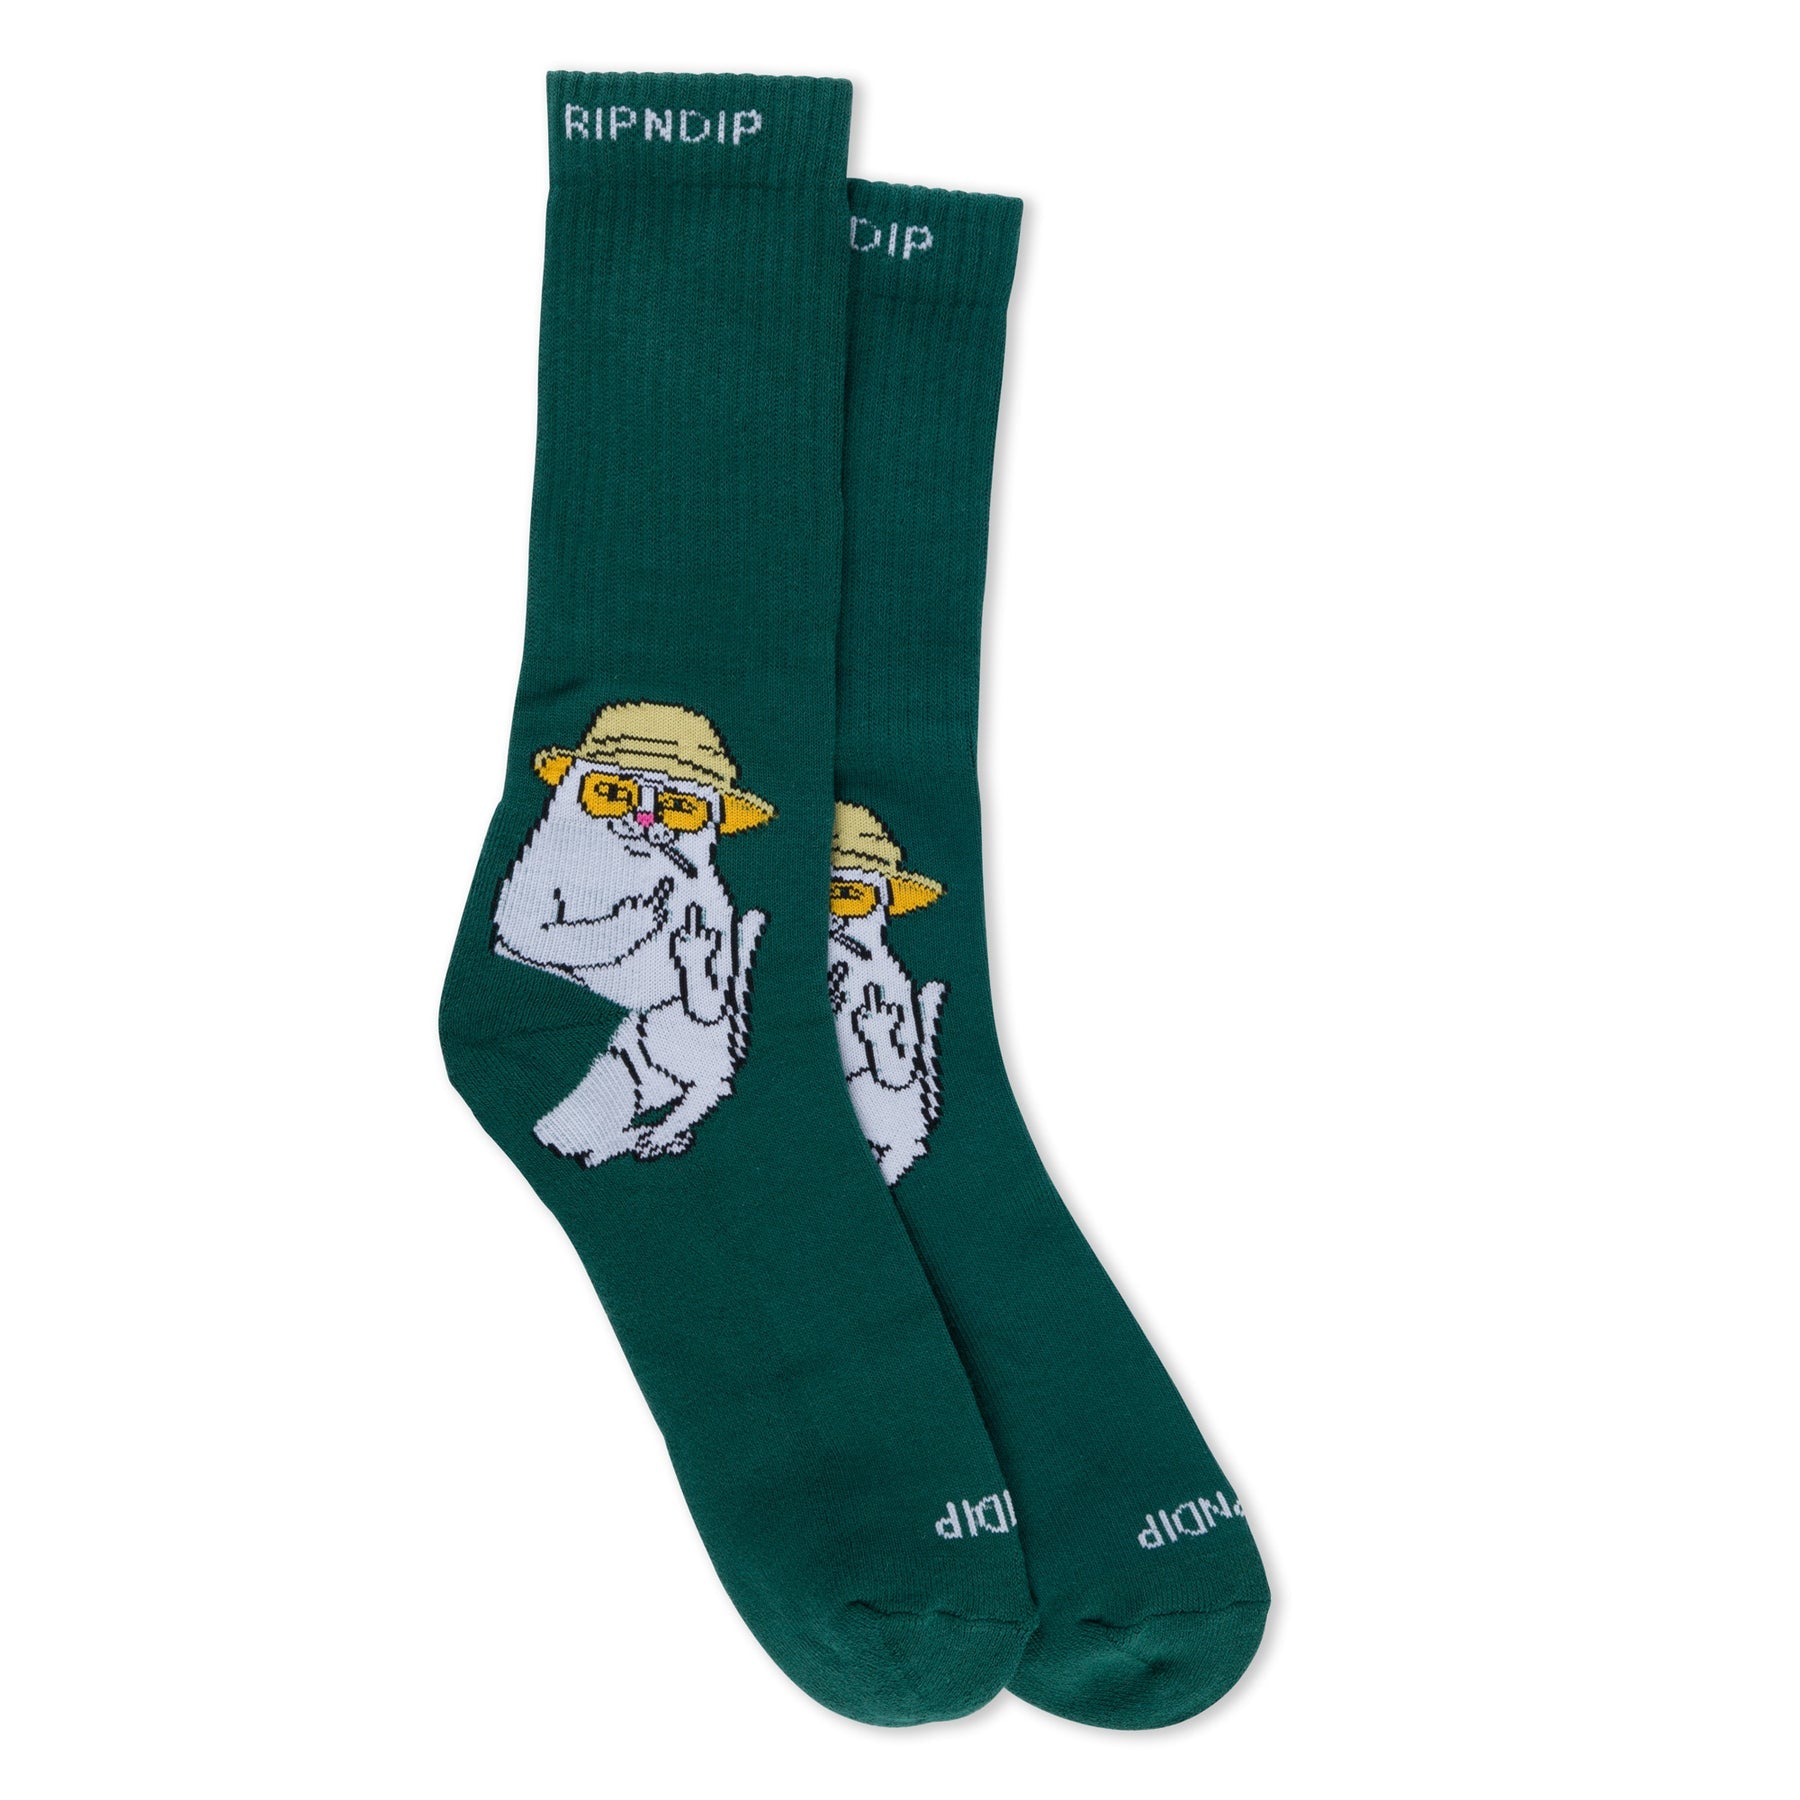 Nermal S Thompson Socks (Hunter Green)